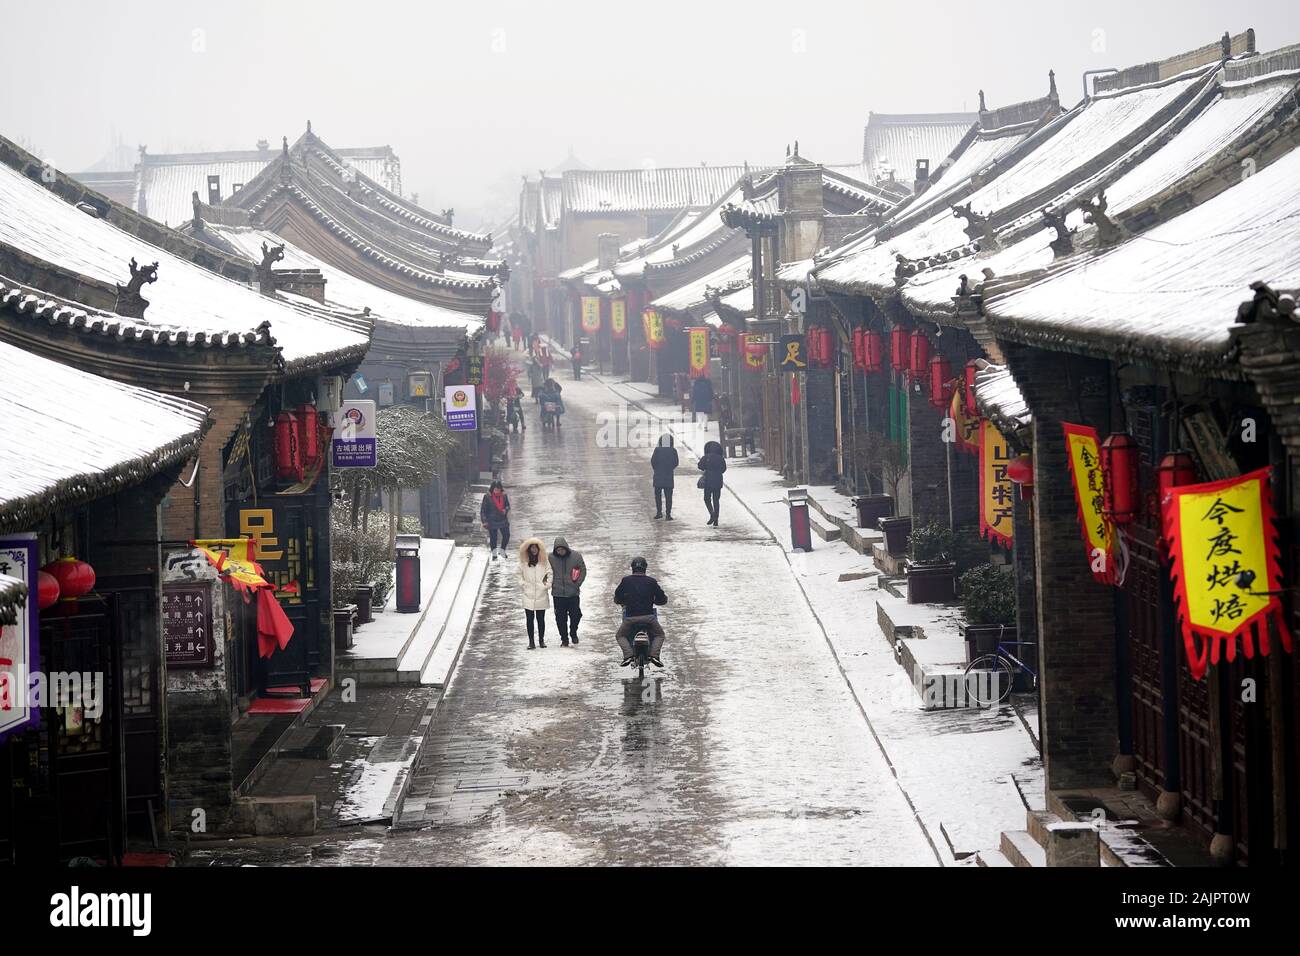 Pingyao, China. 5 de enero, 2020. Los turistas visitan el nevado Pingyao Antigua ciudad en el norte de la Provincia china de Shanxi, 5 de enero de 2020. Fundada en el siglo 14, la antigua ciudad de Pingyao es un ejemplo excepcionalmente bien conservado de una ciudad chinos tradicionales, que fue nombrada Patrimonio de la Humanidad por la UNESCO en 1997. Crédito: Zhan Yan/Xinhua/Alamy Live News Foto de stock